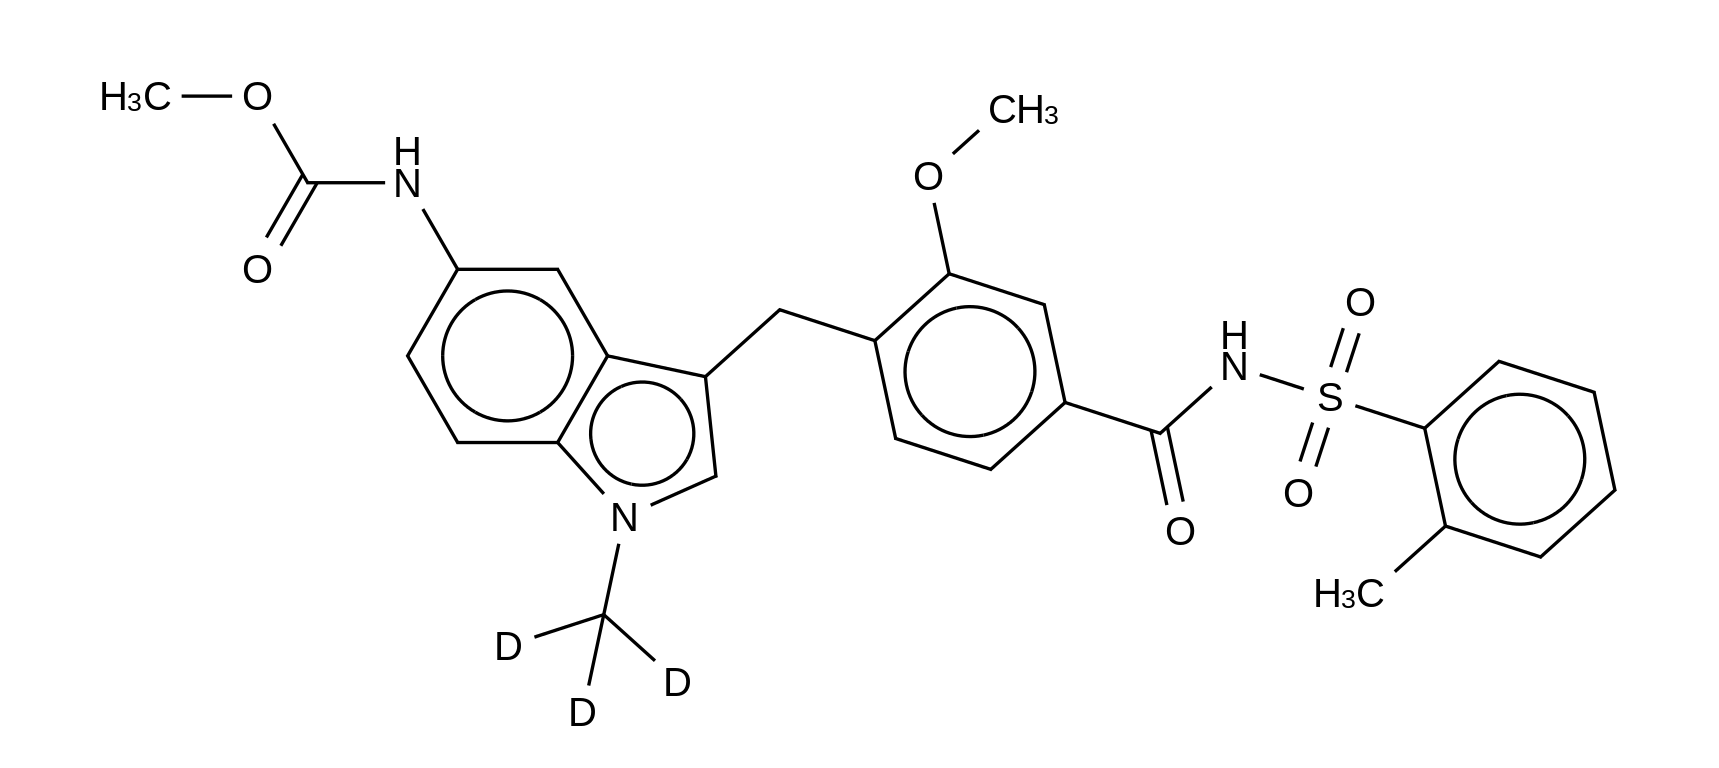 Decyclopentyl Zafirlukast-d<sub>3</sub> Methyl Ester